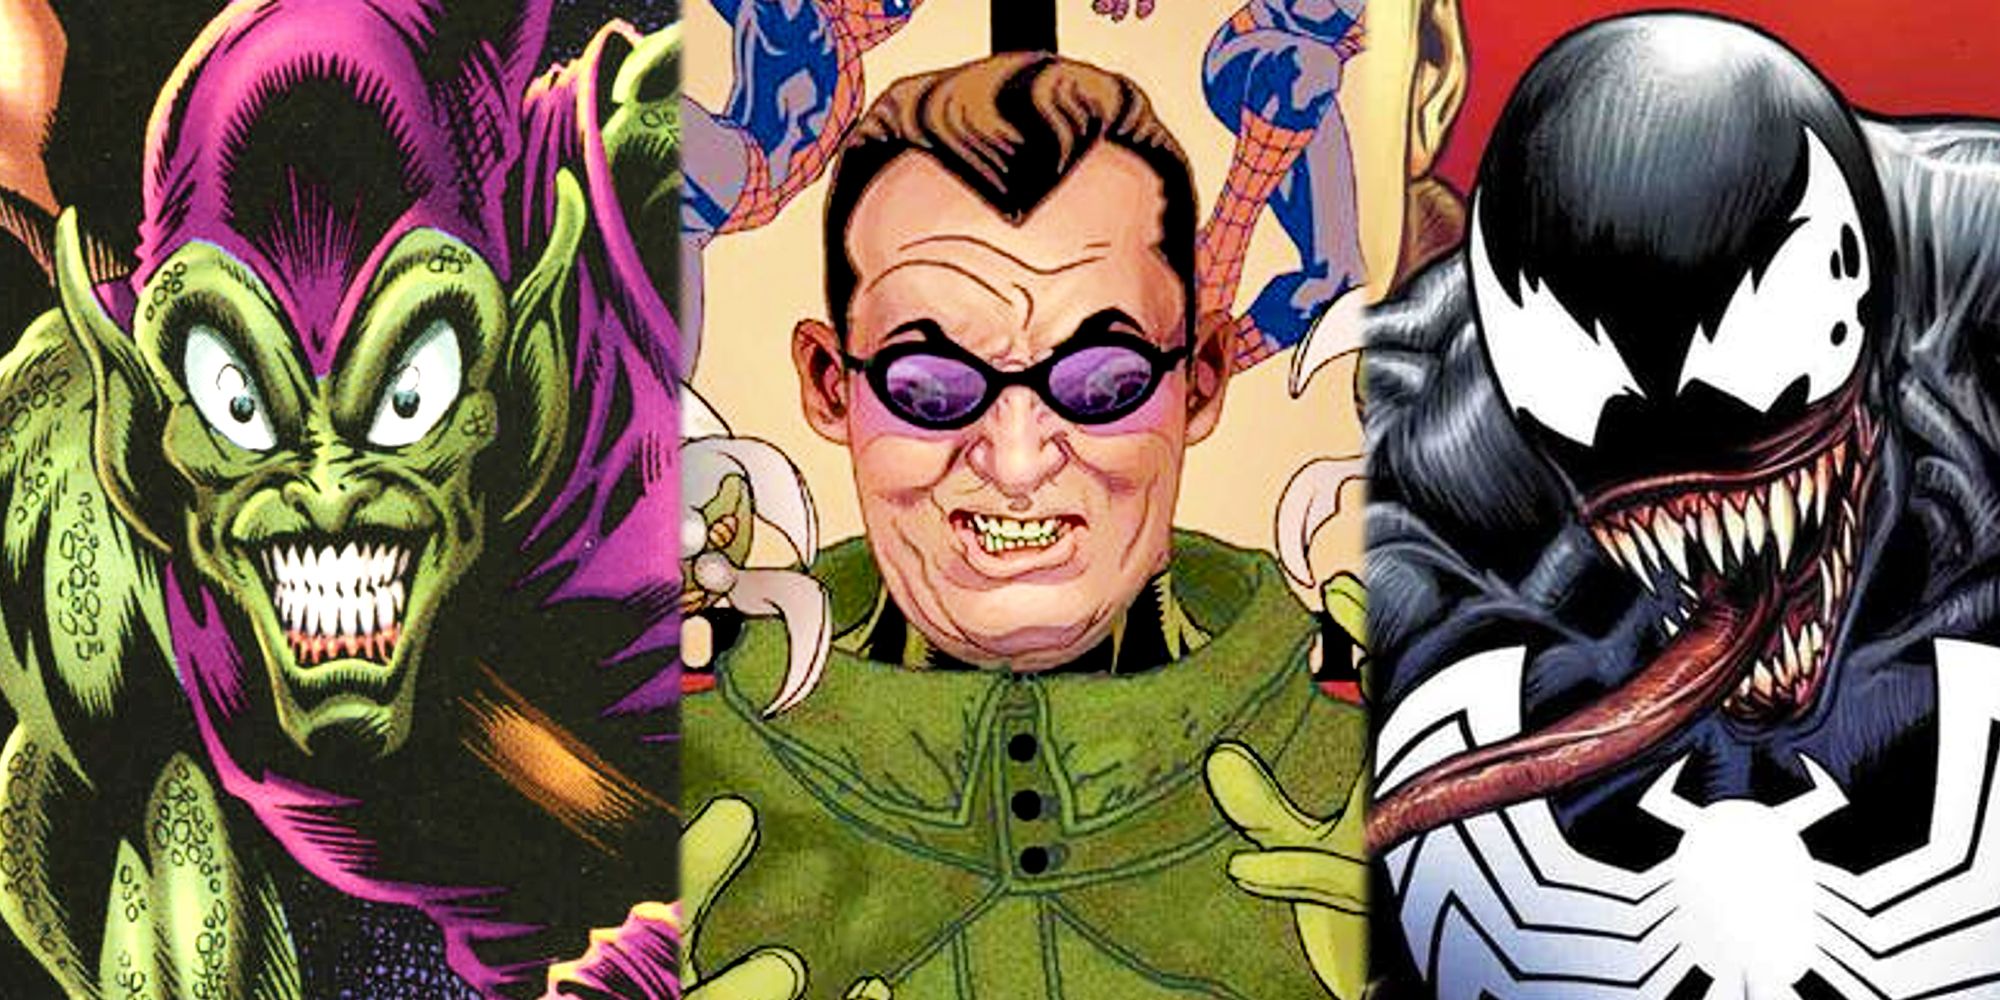 Spider-Man Villains Green Goblin, Doctor Octopus, and Venom